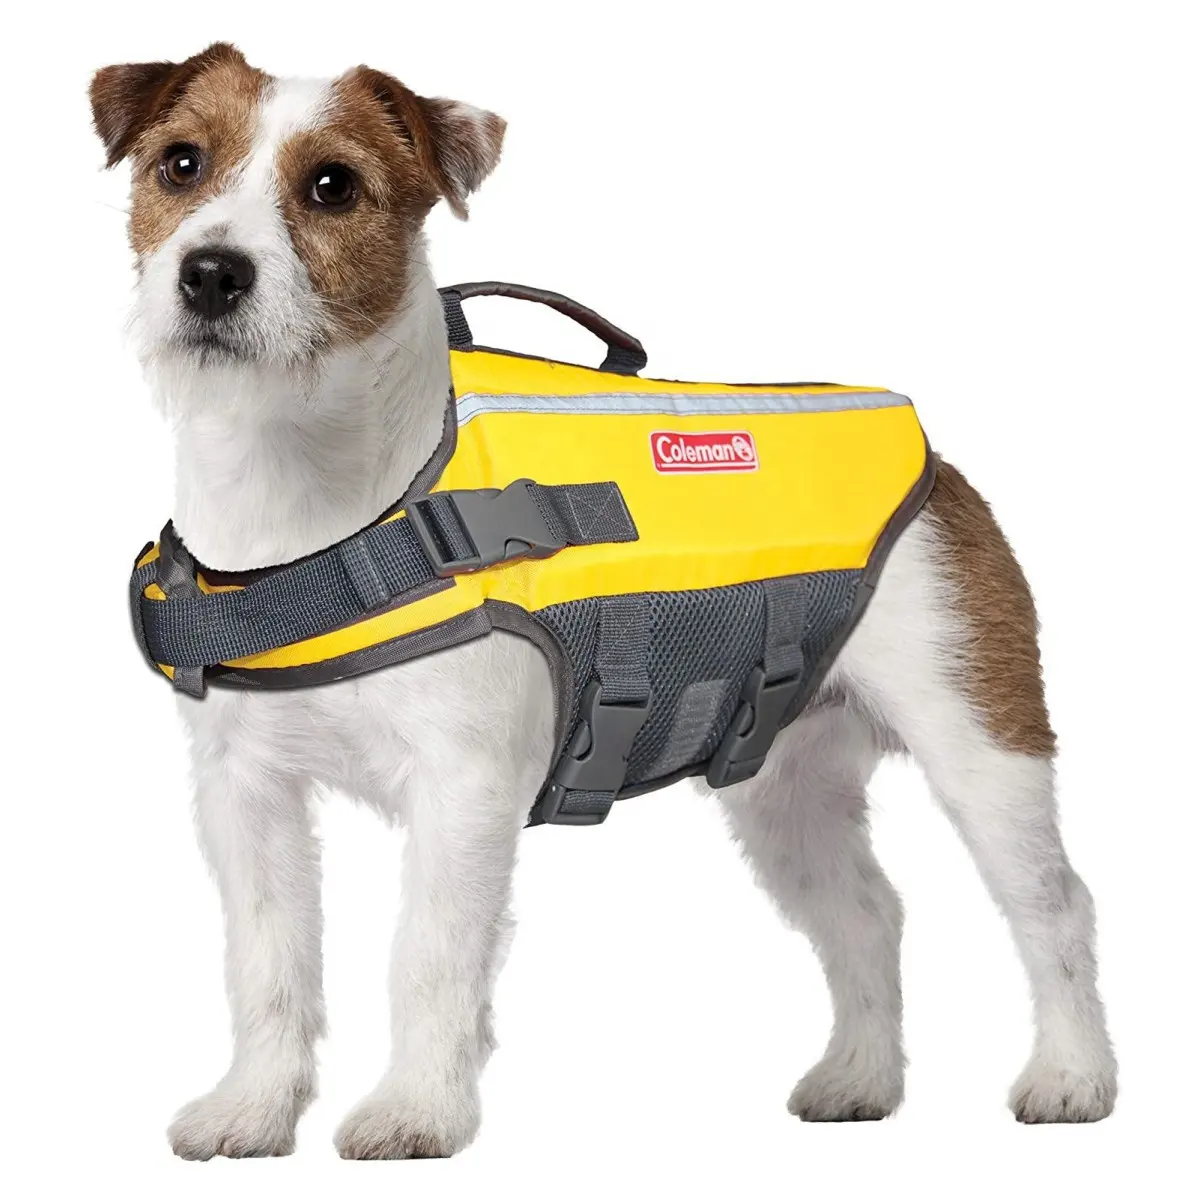 เสื้อชูชีพสำหรับสุนัขเพื่อความปลอดภัยในการว่ายน้ำ,เสื้อชูชีพมองเห็นได้ชัดเจนสำหรับสุนัขขนาดเล็กถึงขนาดใหญ่,สีเหลือง,ขนาดเล็ก/4 "X 12" X 3 "'